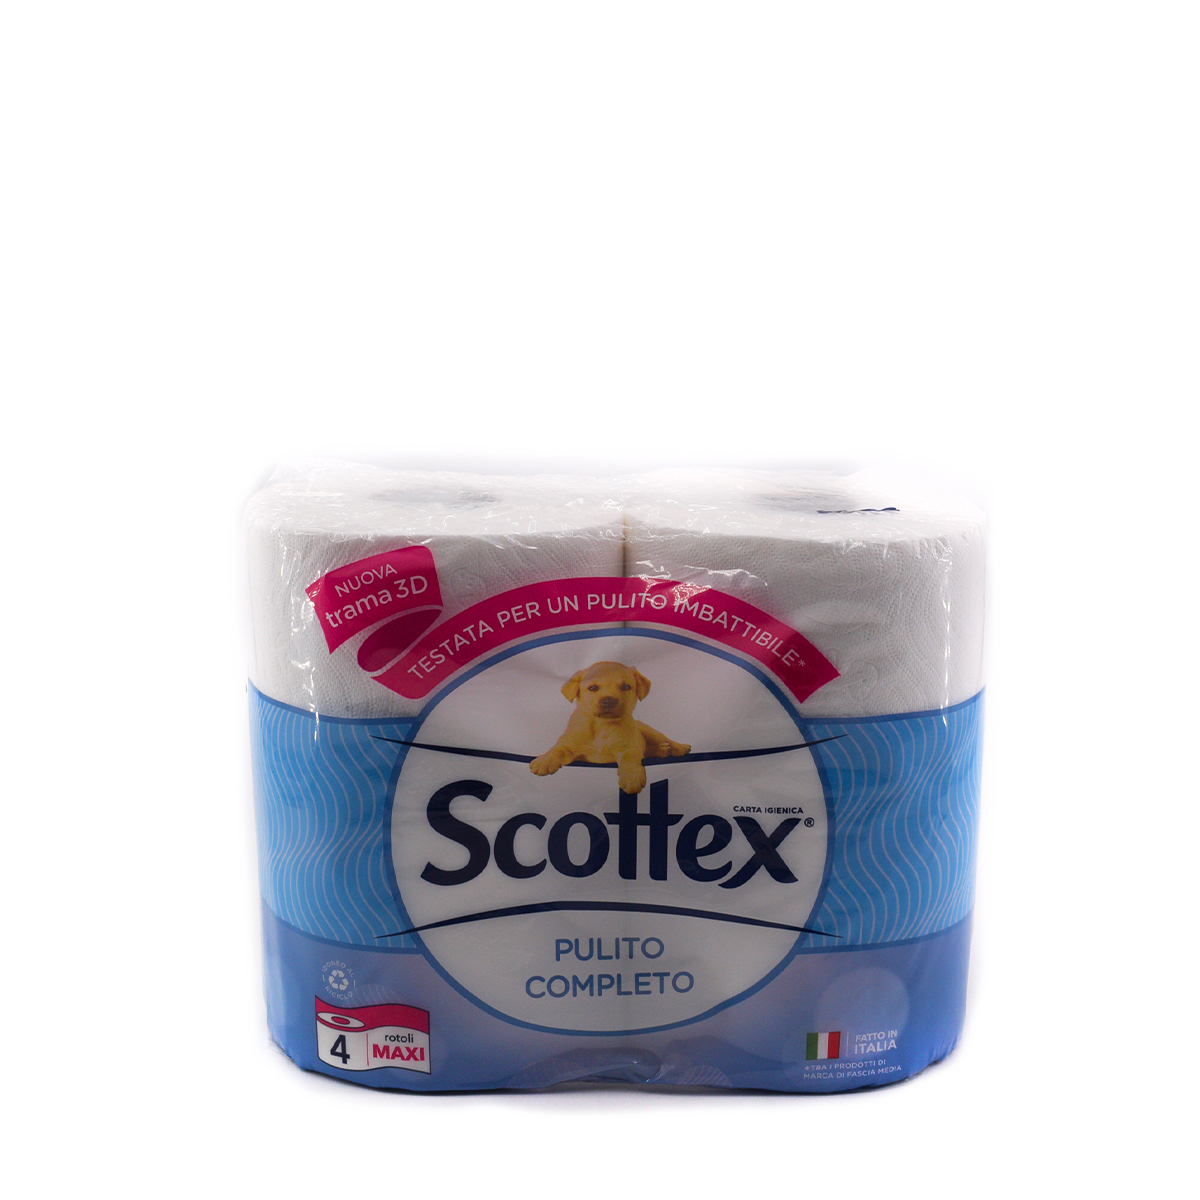 Scottex 3 in 1 Pulito Completo 6 Confezioni da 4 Maxi Rotoli Ciascuno